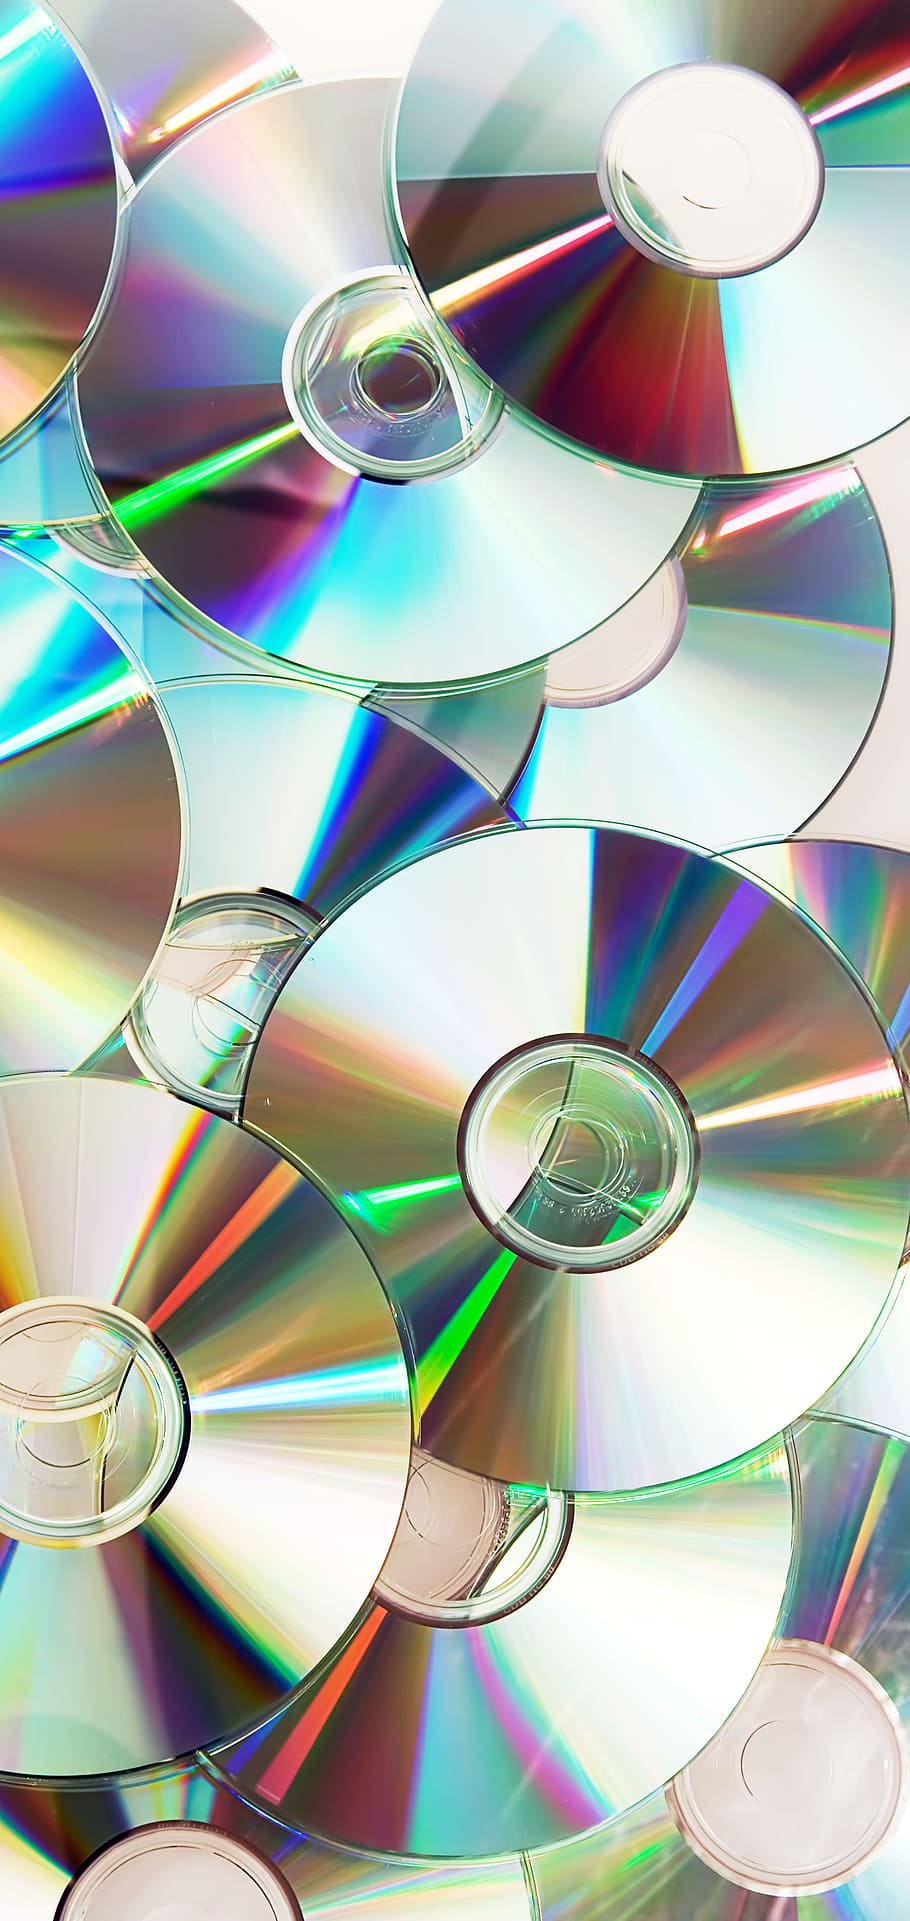 cd, cd-rom, cover, data, digital, disk, dvd, empty, film, games